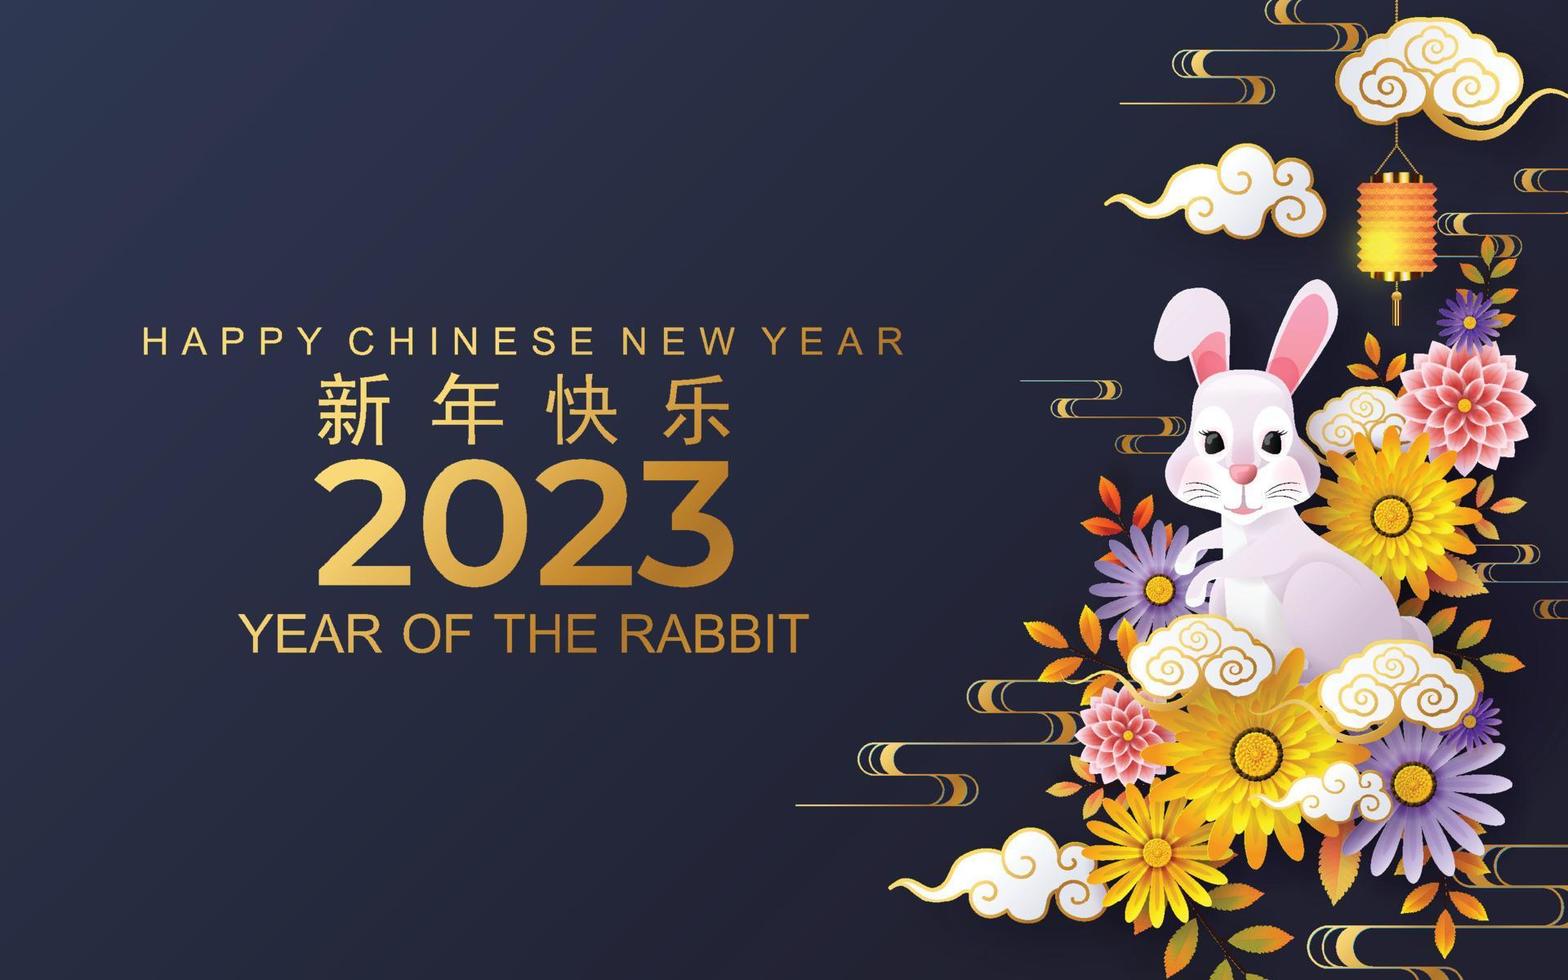 joyeux nouvel an chinois 2023 gong xi fa cai année du lapin, lièvres, lapin signe du zodiaque avec fleur, lanterne, éléments asiatiques style papier découpé doré sur fond couleur. vecteur